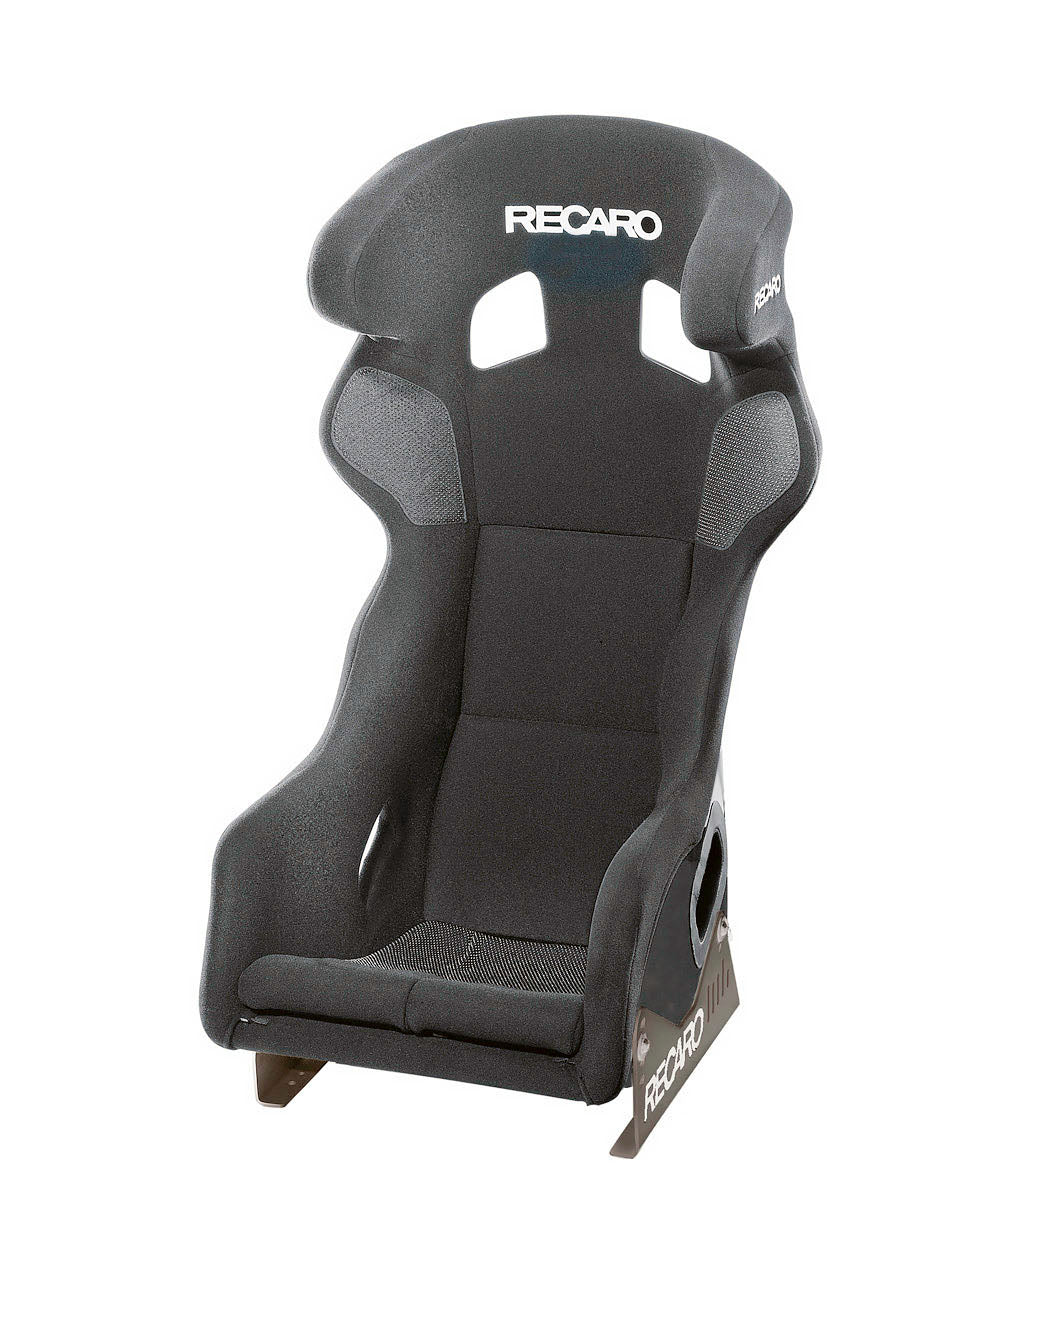 Recaro Pro Racer SPG XL Racing Seat